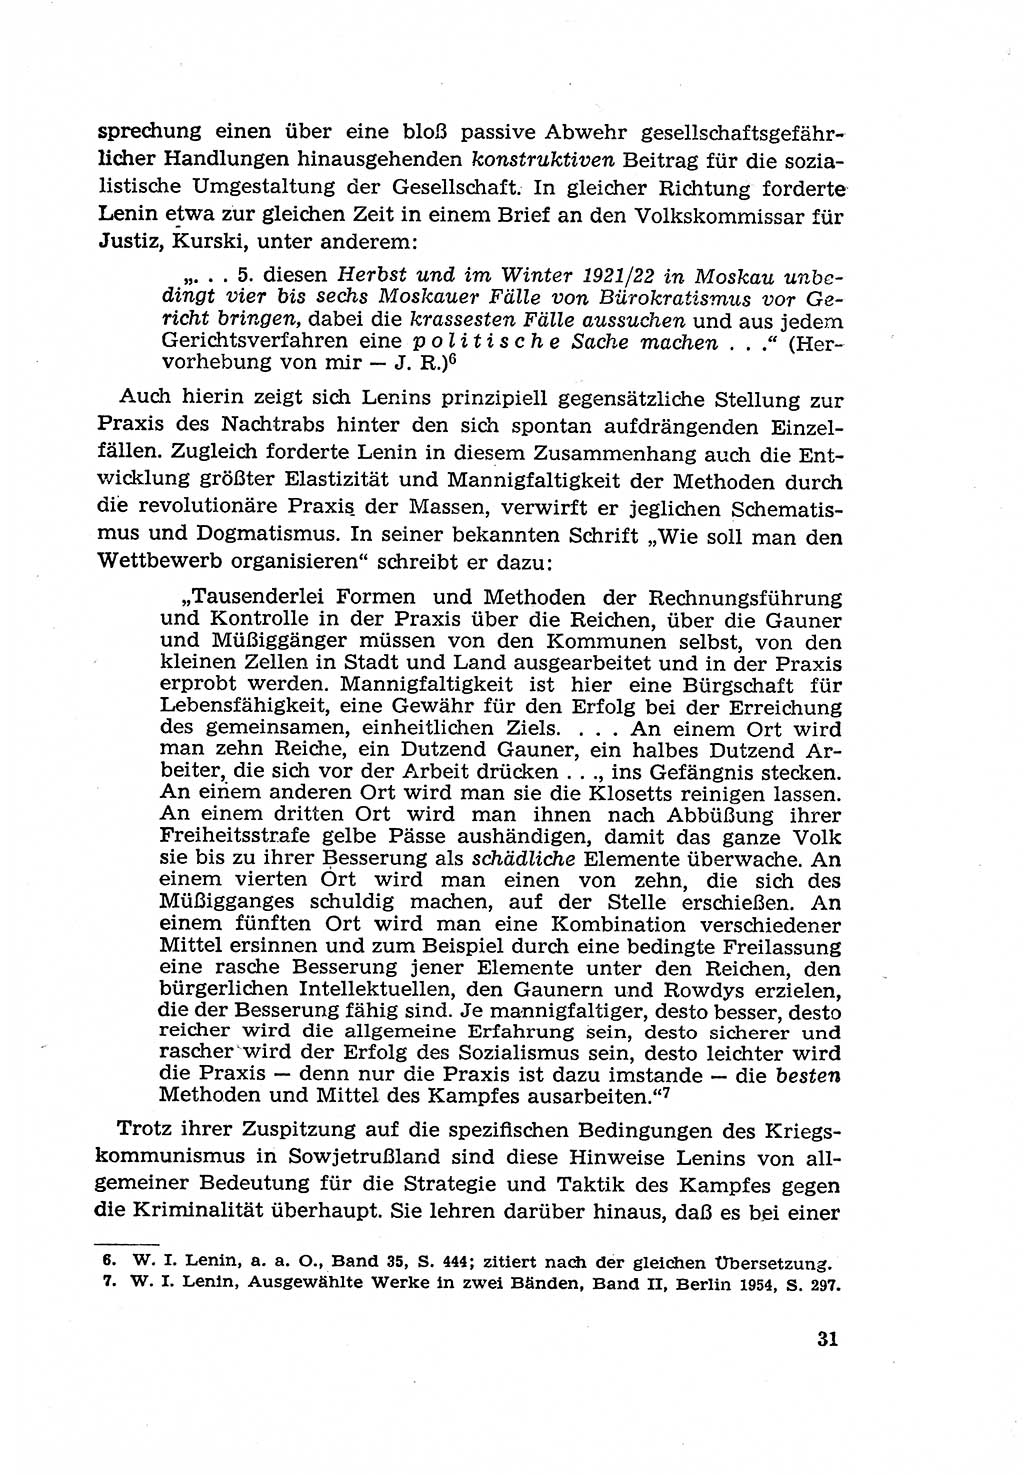 Zur Entwicklung des sozialistischen Strafrechts der Deutschen Demokratischen Republik (DDR) 1960, Seite 31 (Entw. soz. Strafr. DDR 1960, S. 31)